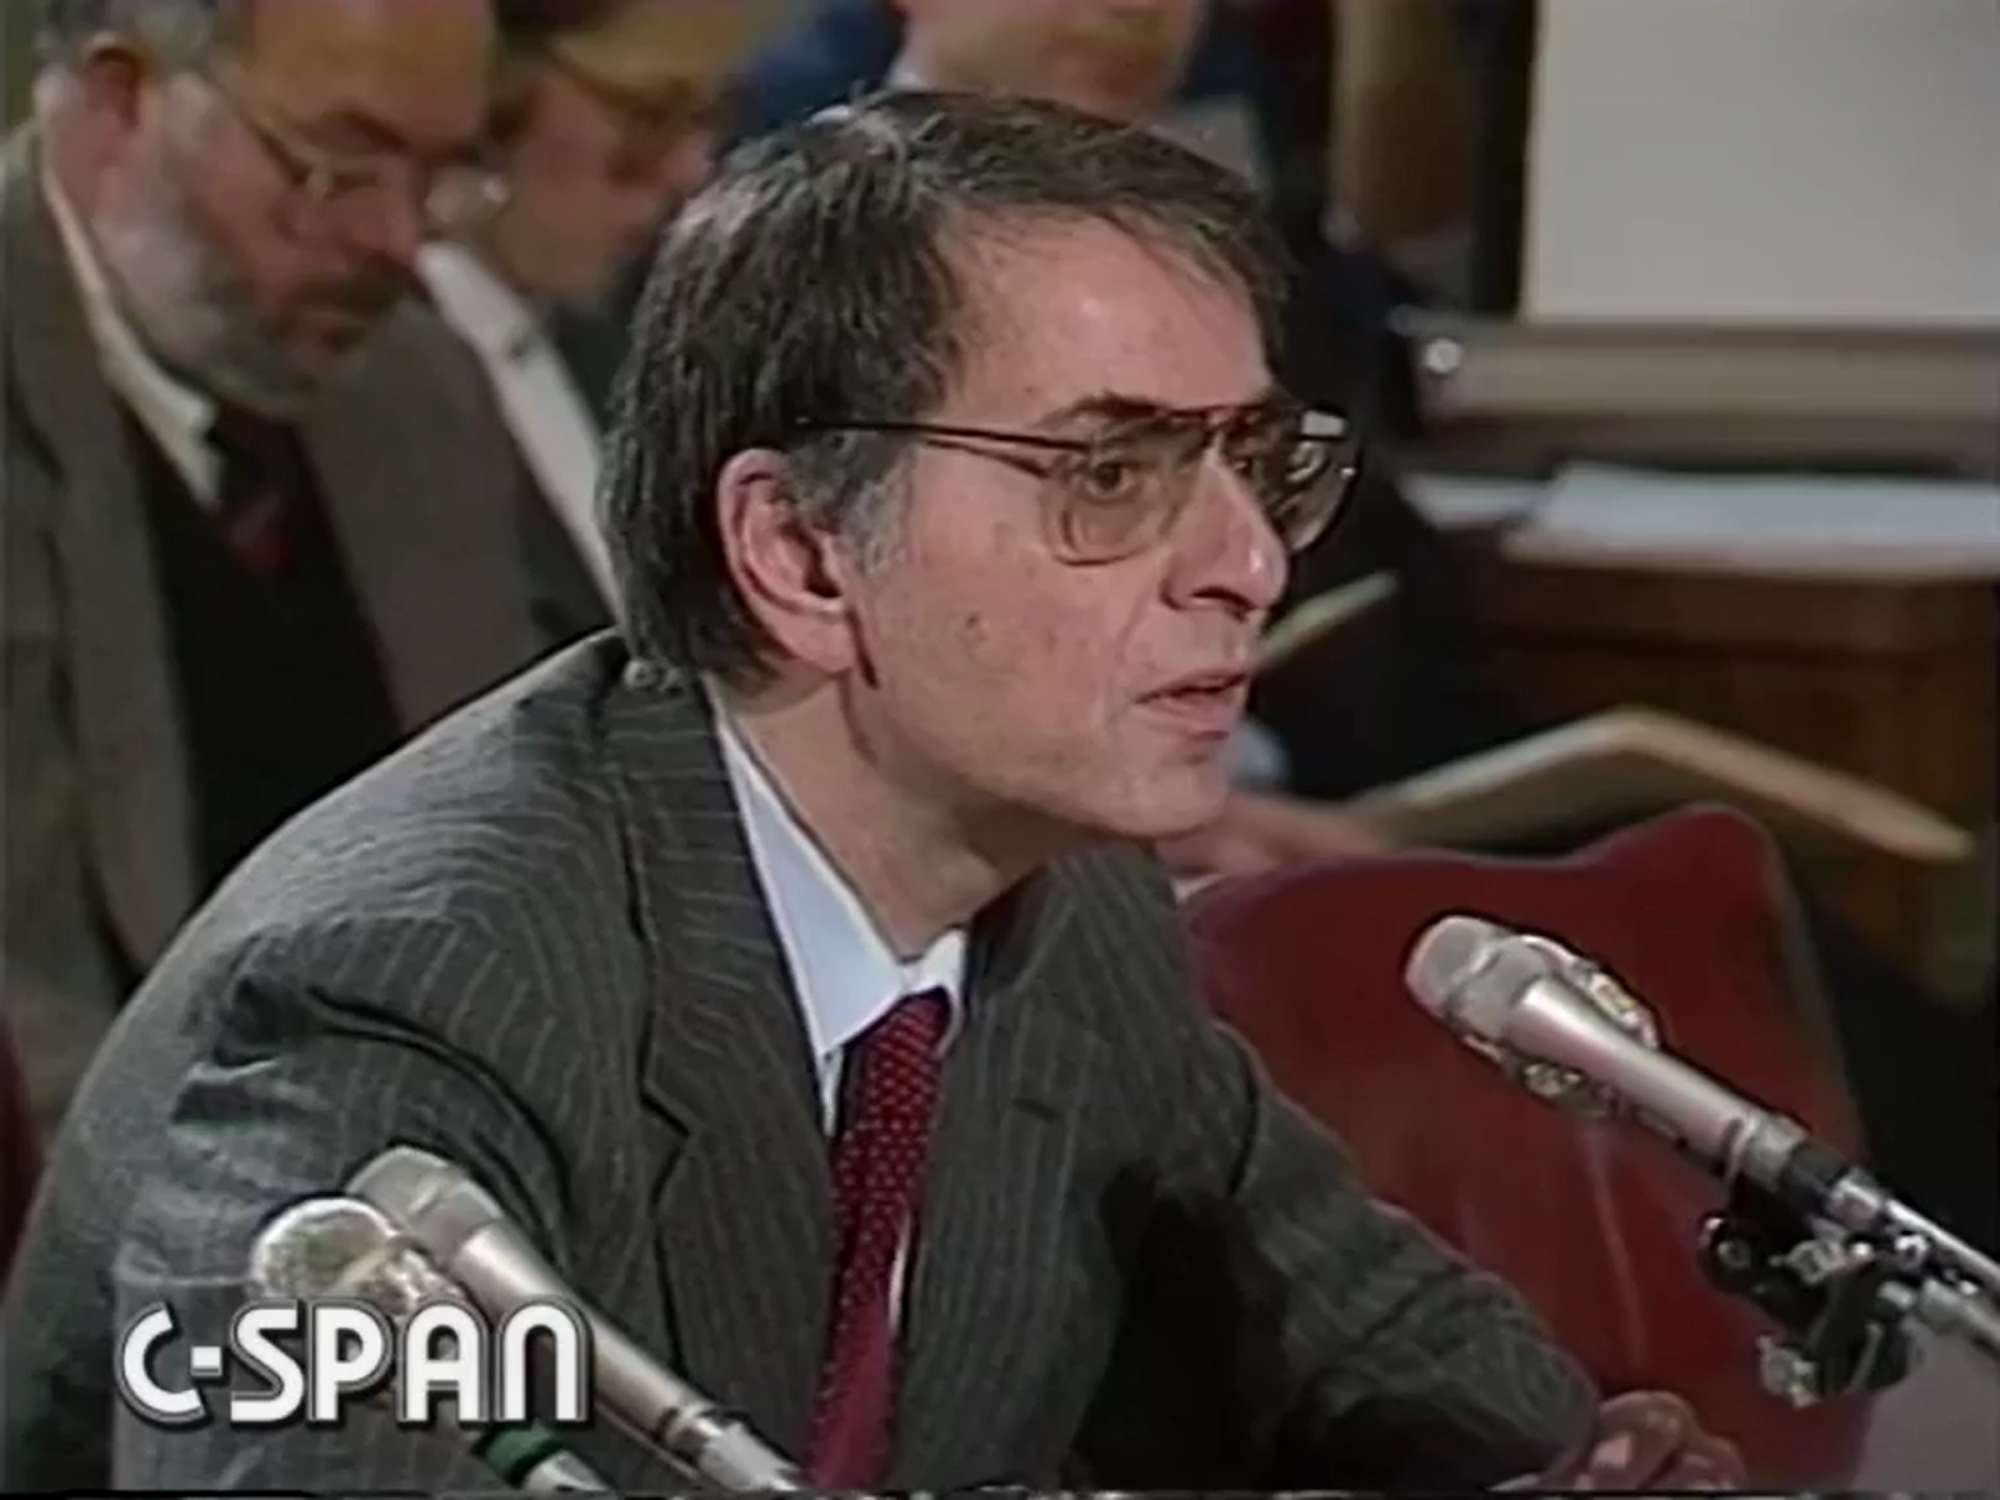 Carl Sagan az amerikai szenátusi meghallgatáson tett nyilatkozata közben